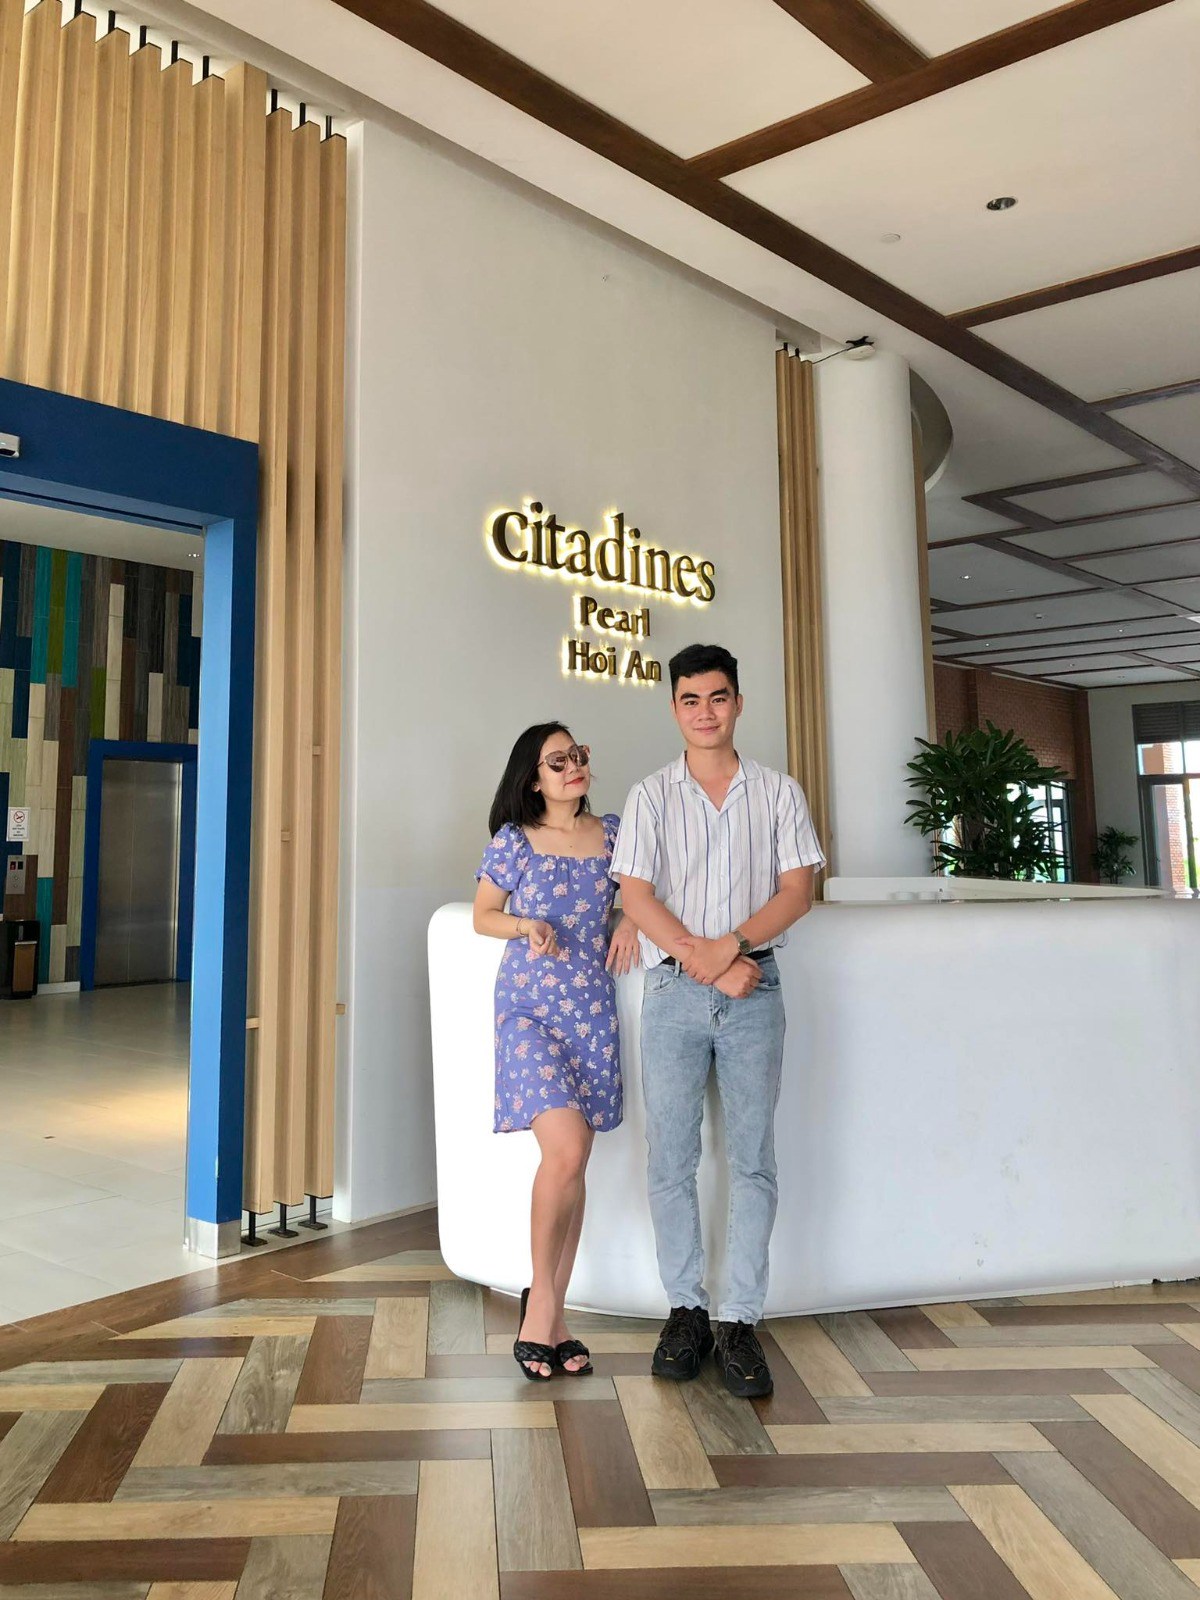 Citadines Pearl Hoi An: Cam kết mang đến cho khách hàng trải nghiệm khách sạn đặc biệt và bền vững